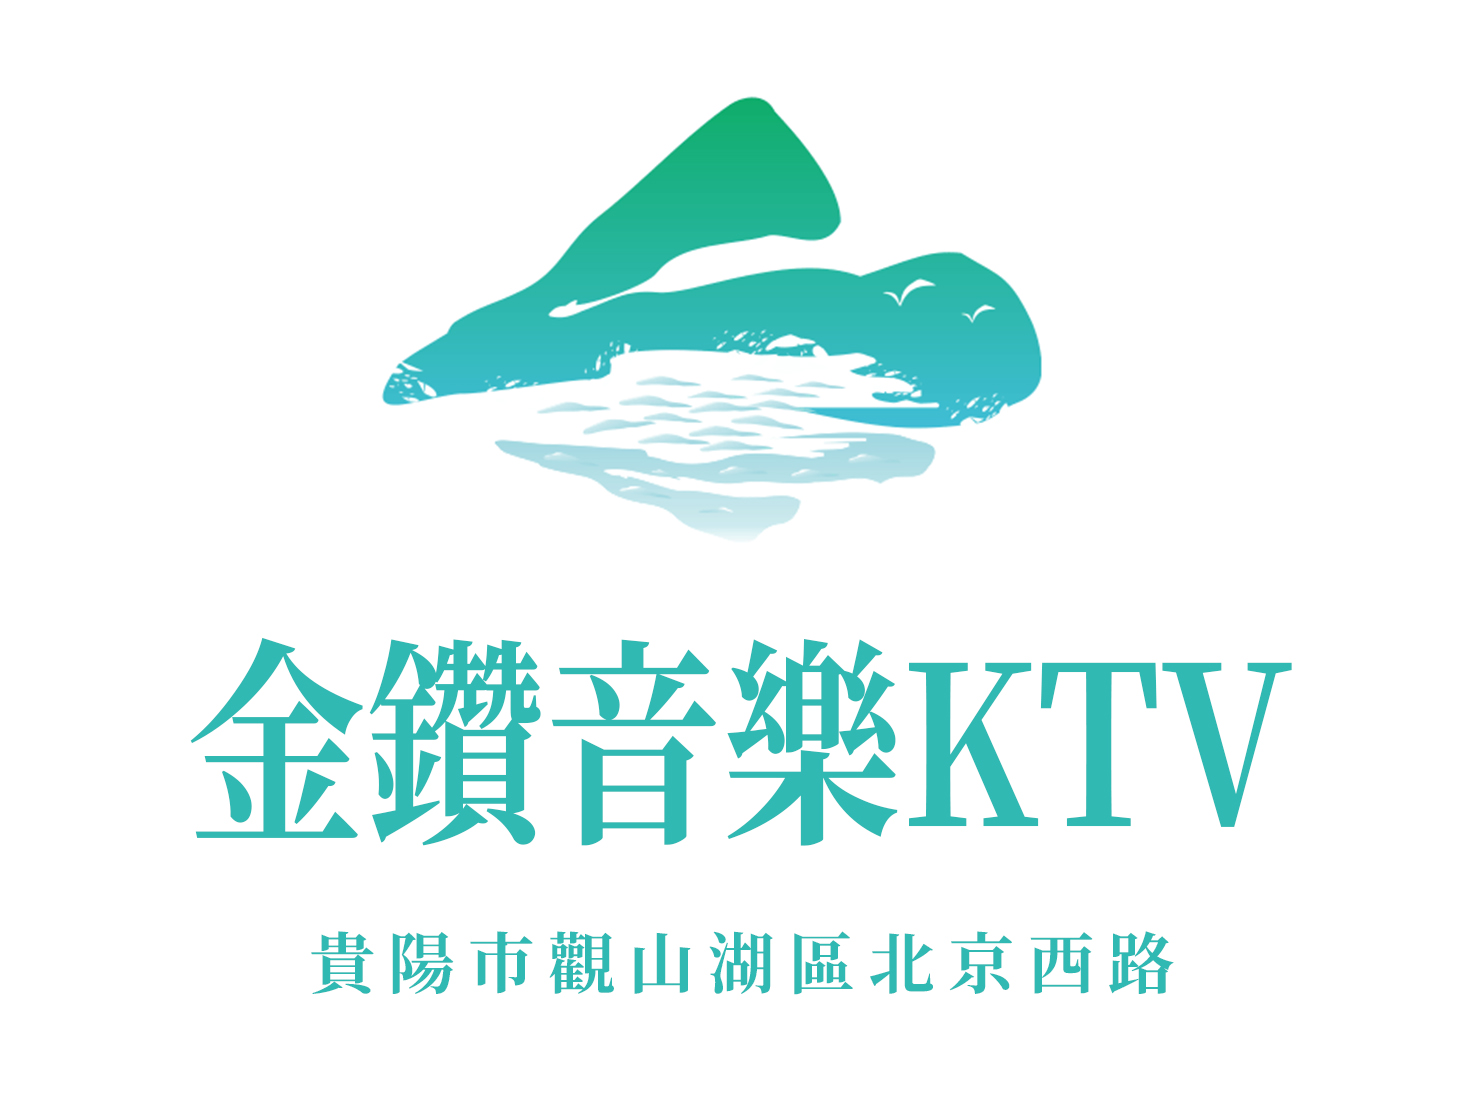 贵阳金钻音乐公馆KTV